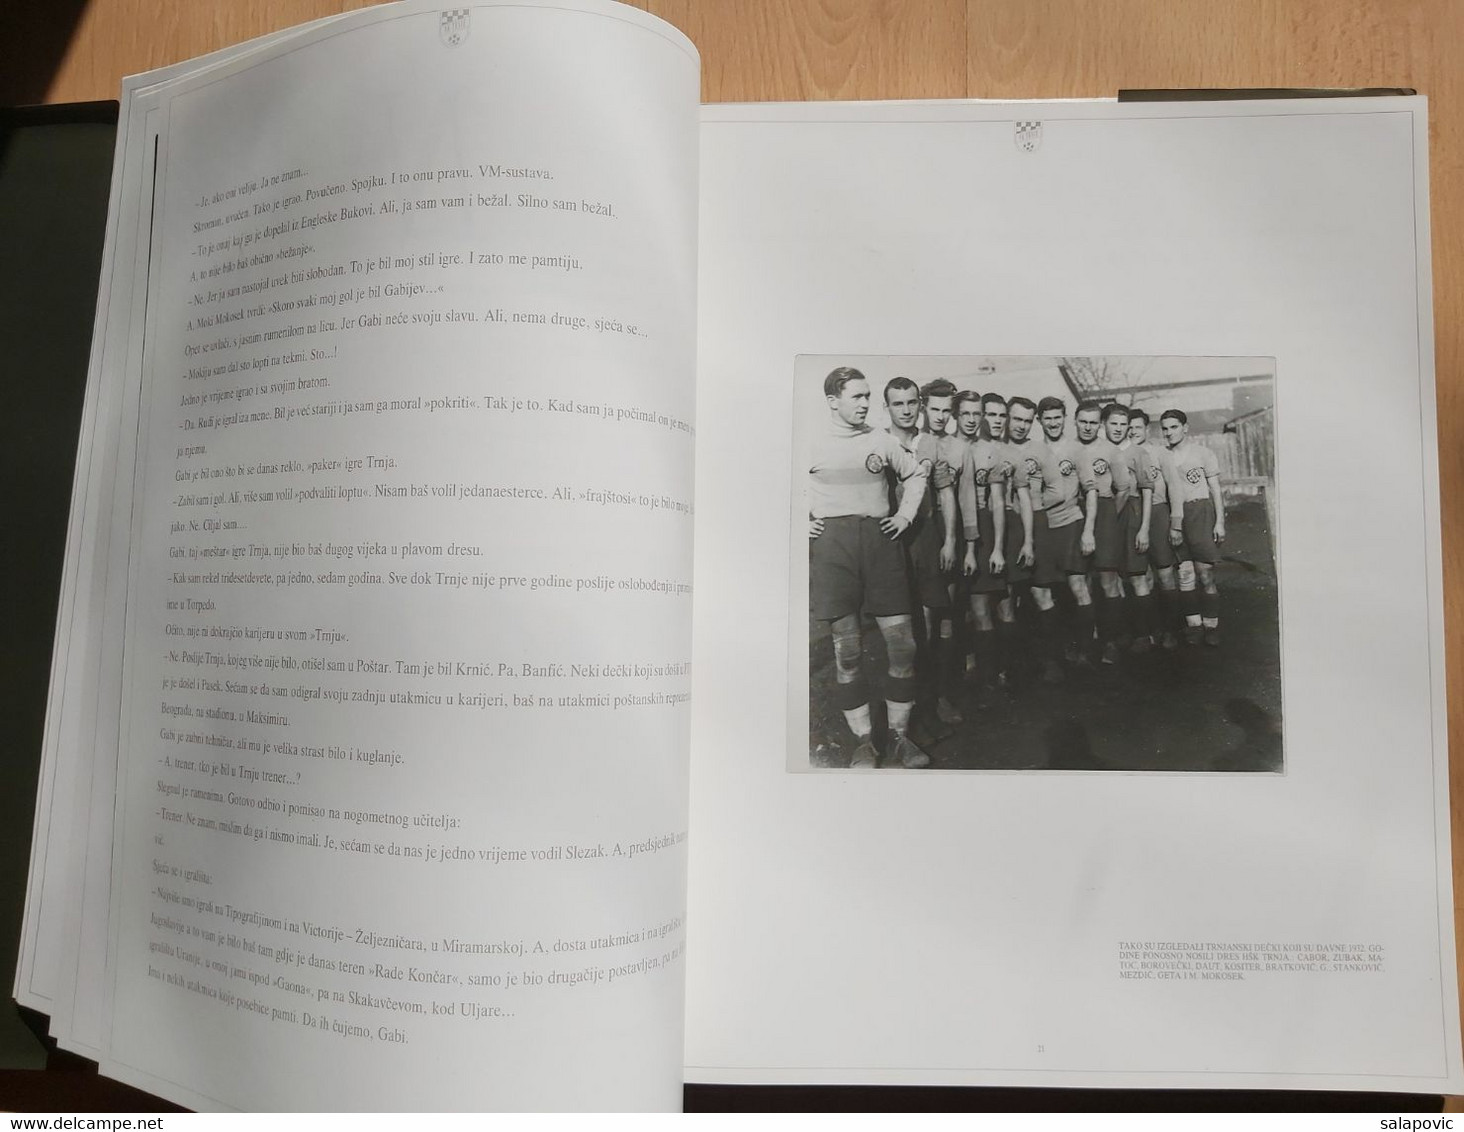 NK Trnje 1924-1989 Football Club, Croatia - Bücher